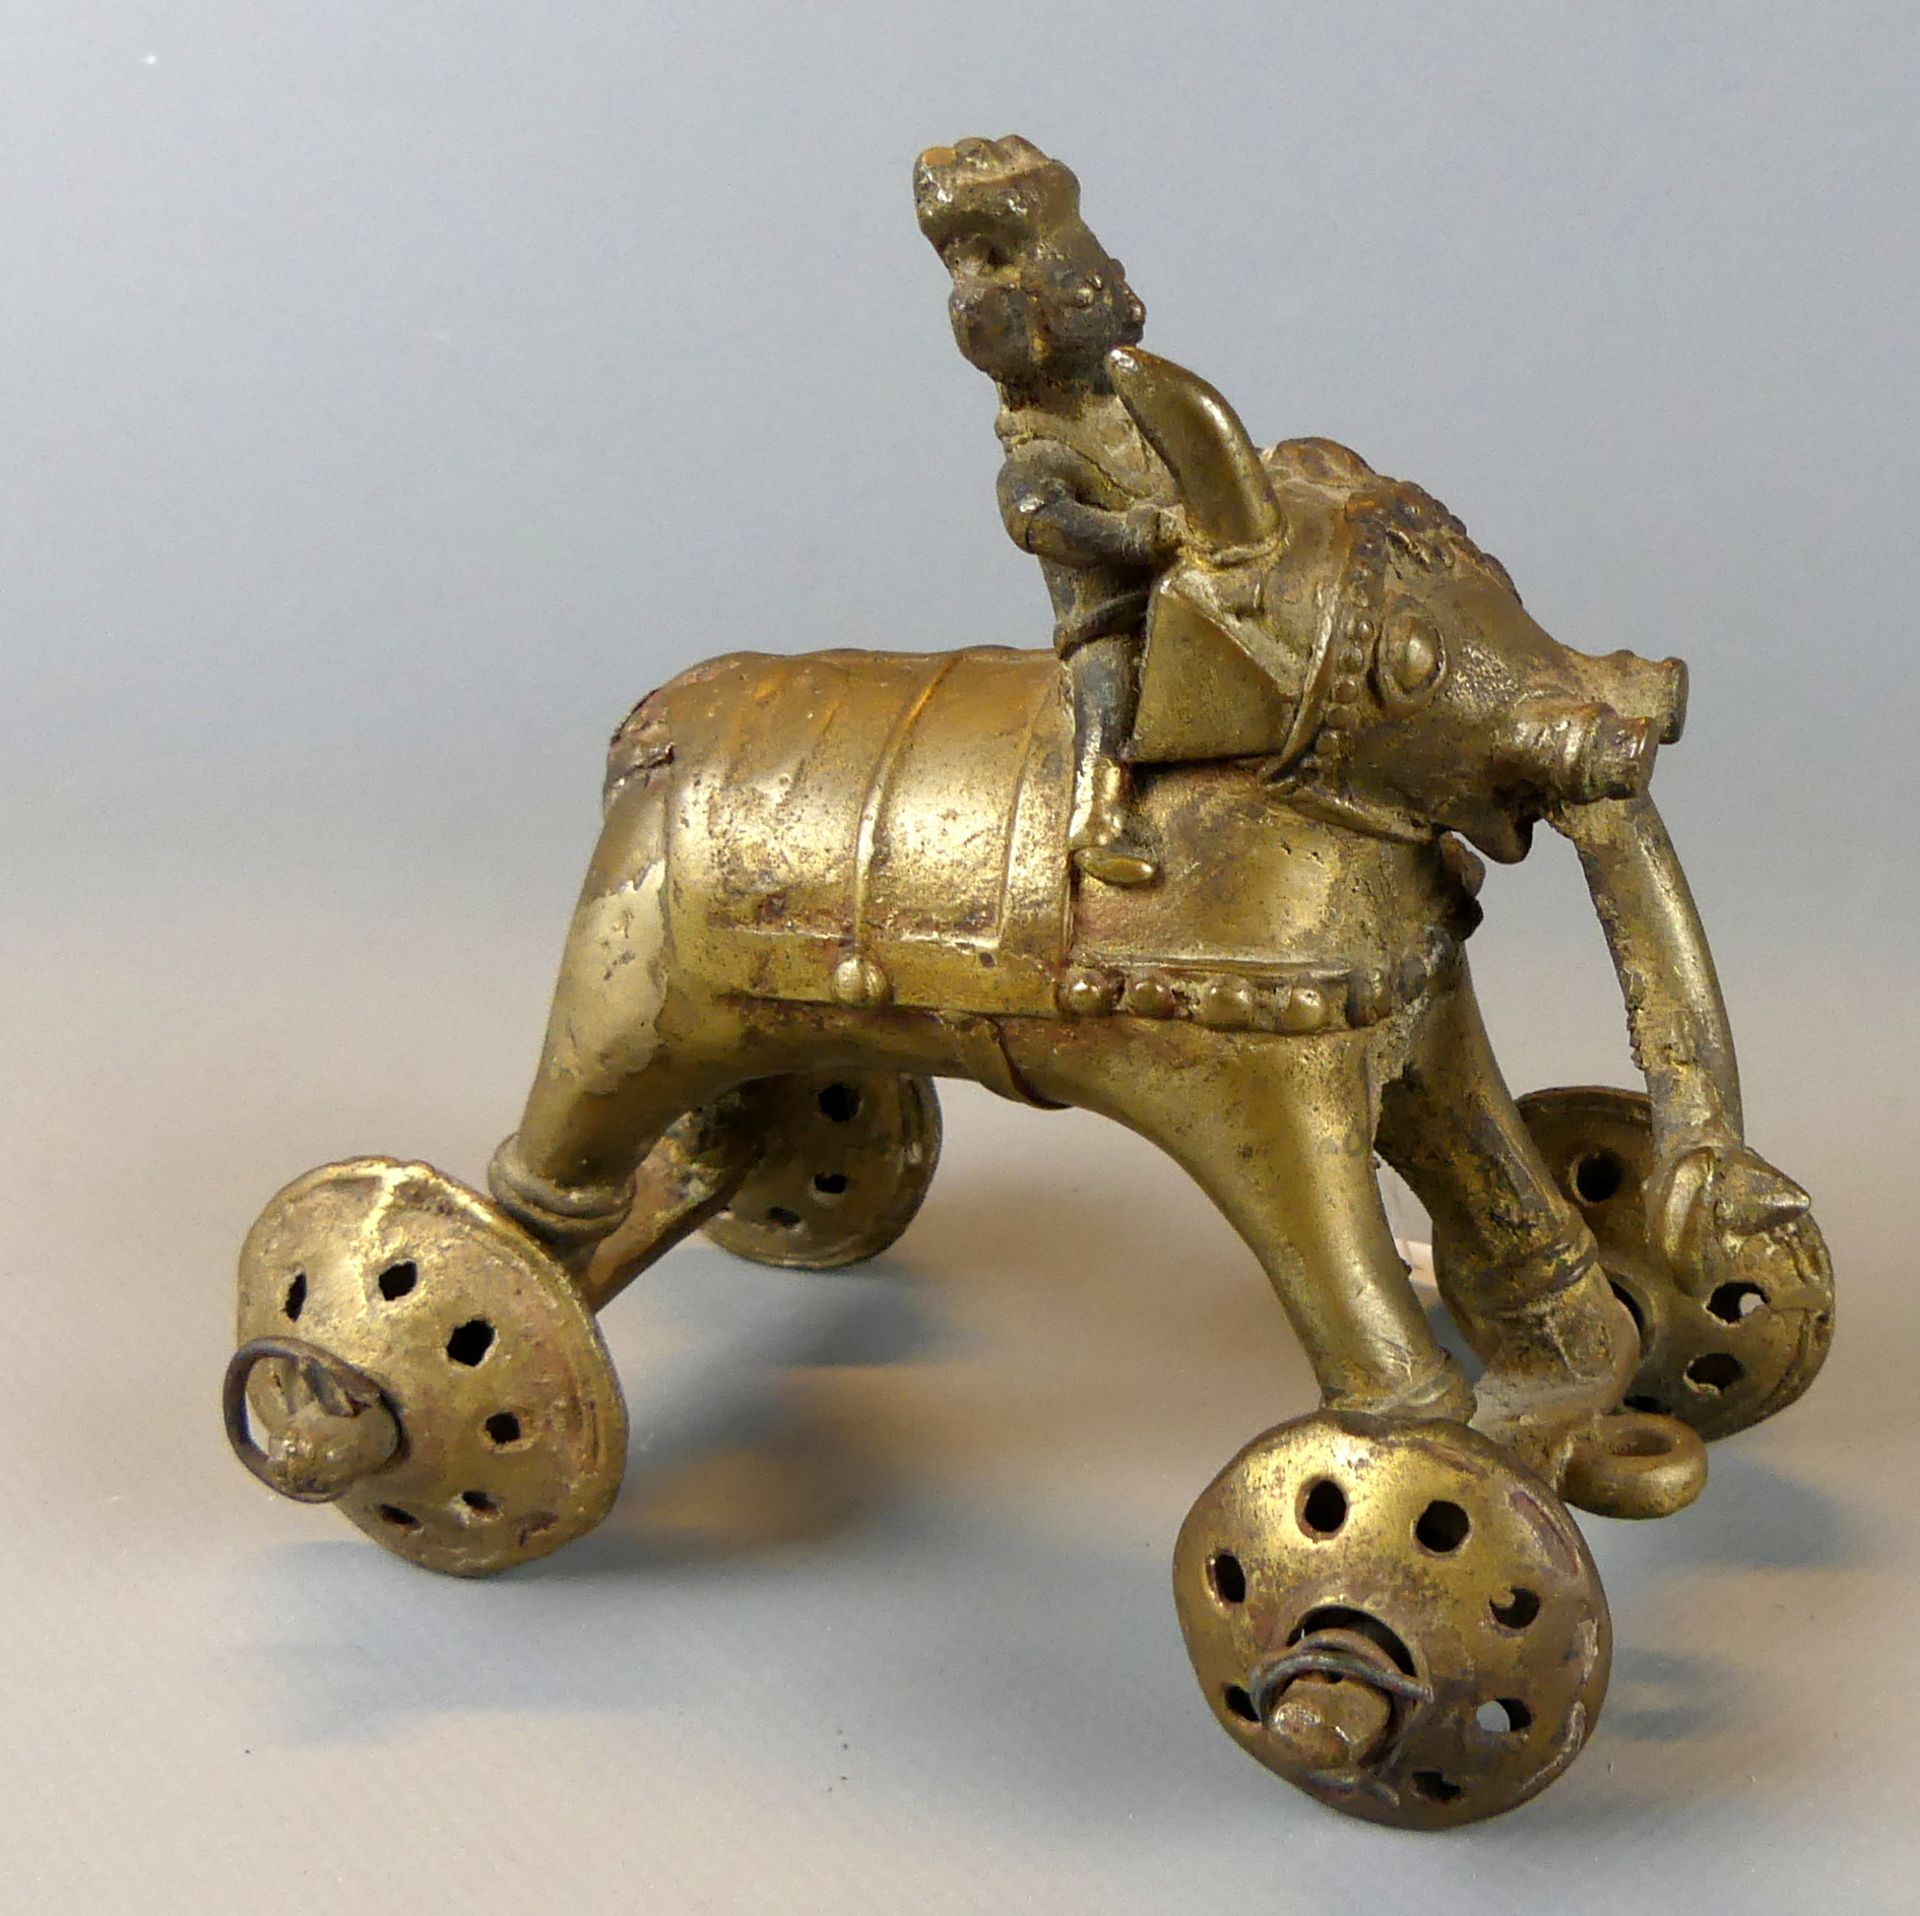 Elefant mit Reiter auf Rädern, Messing, Asien, Antikes Spielzeug,